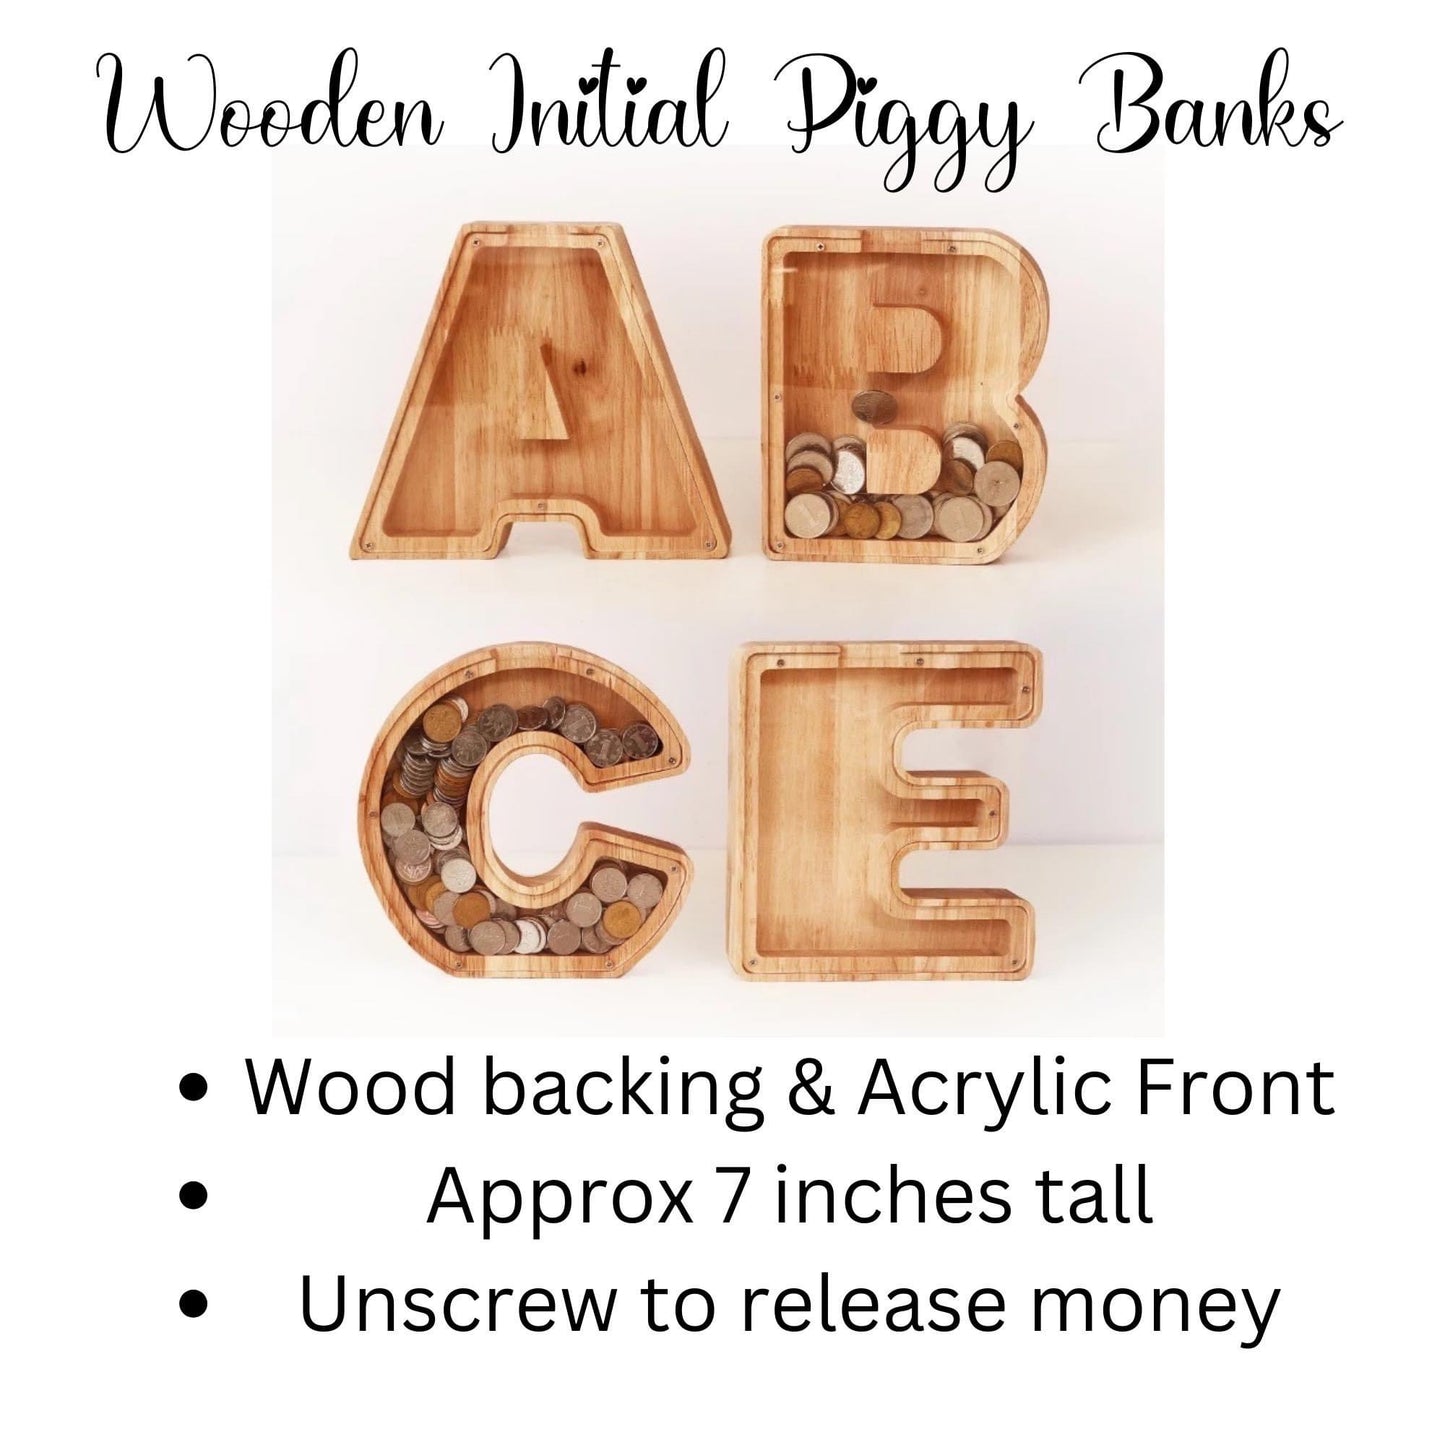 Wooden initial piggy bank